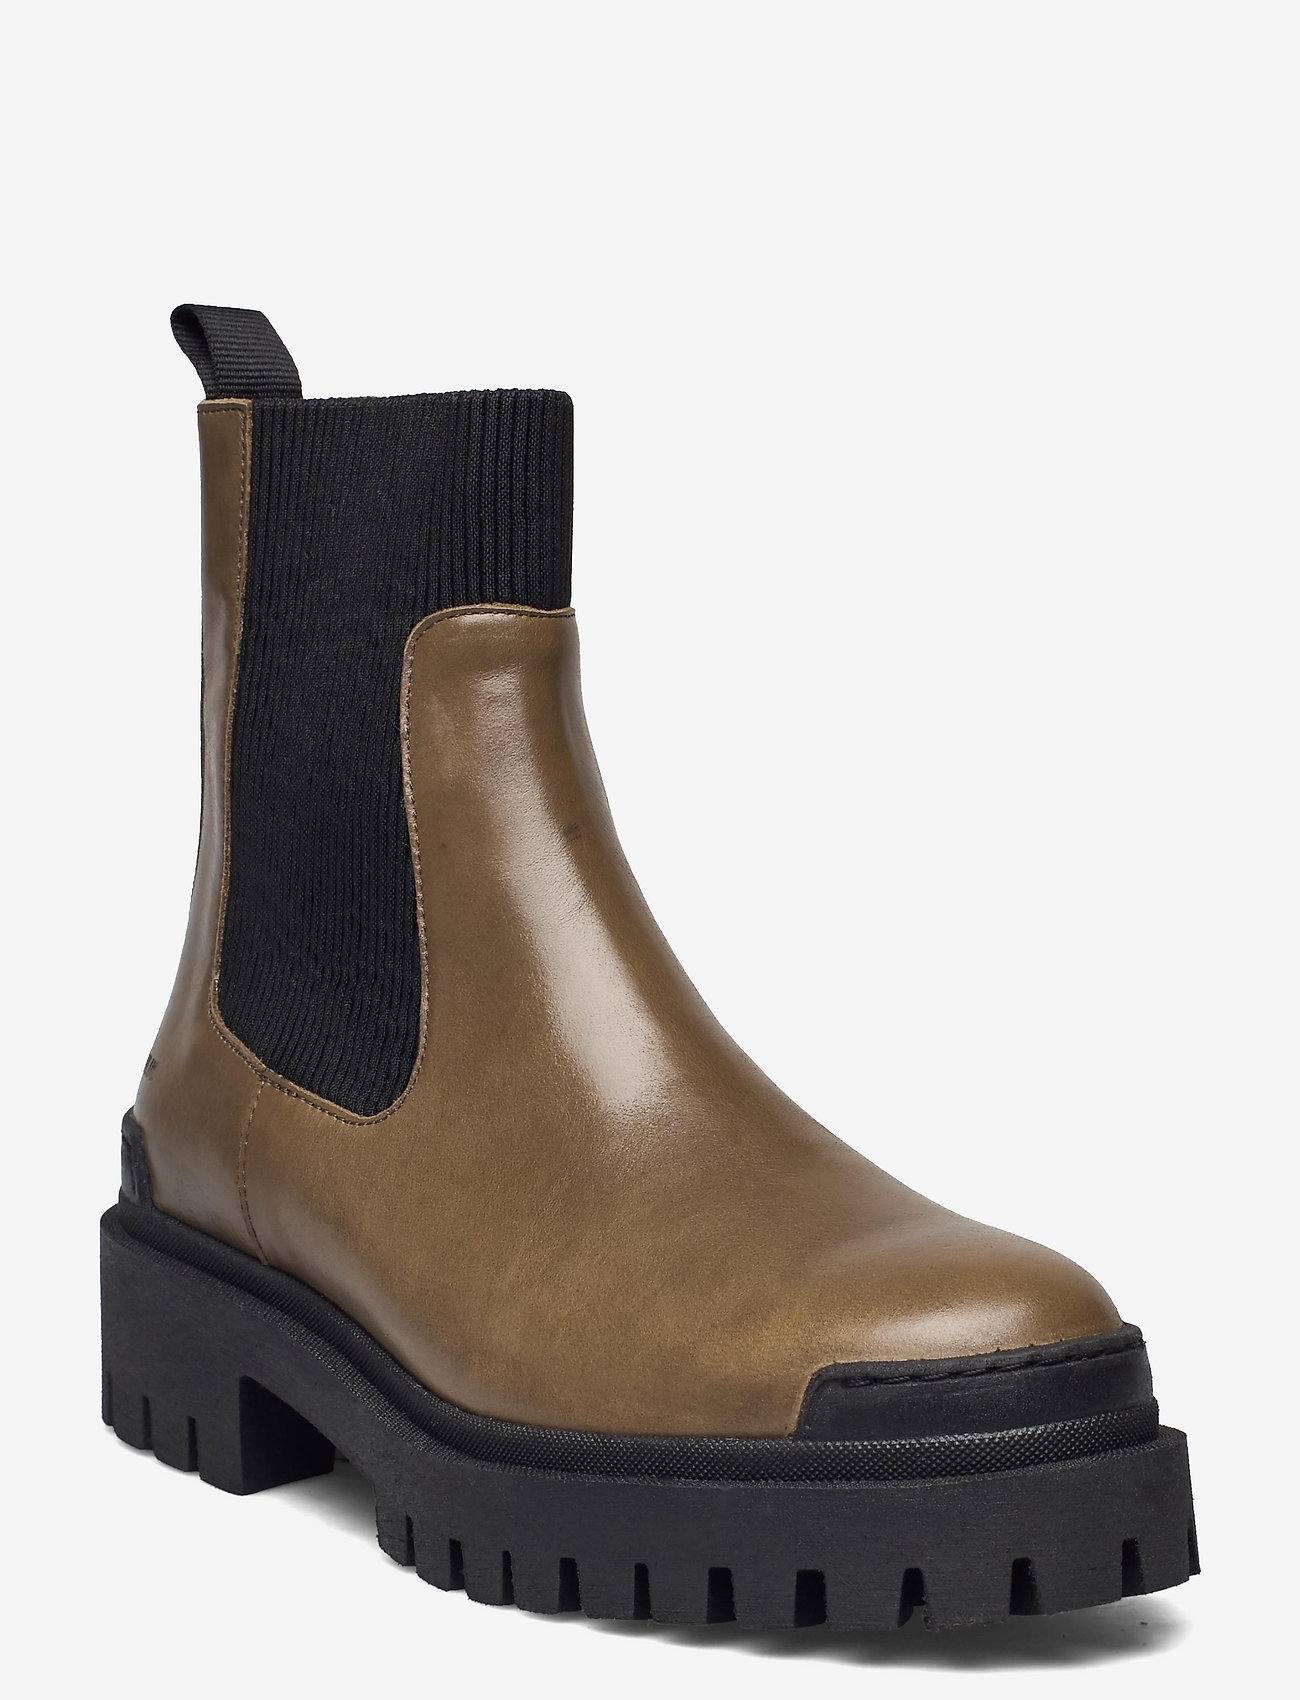 ANGULUS - Boots - flat - ziemeļvalstu stils - 1841/019 dark olive/black - 0